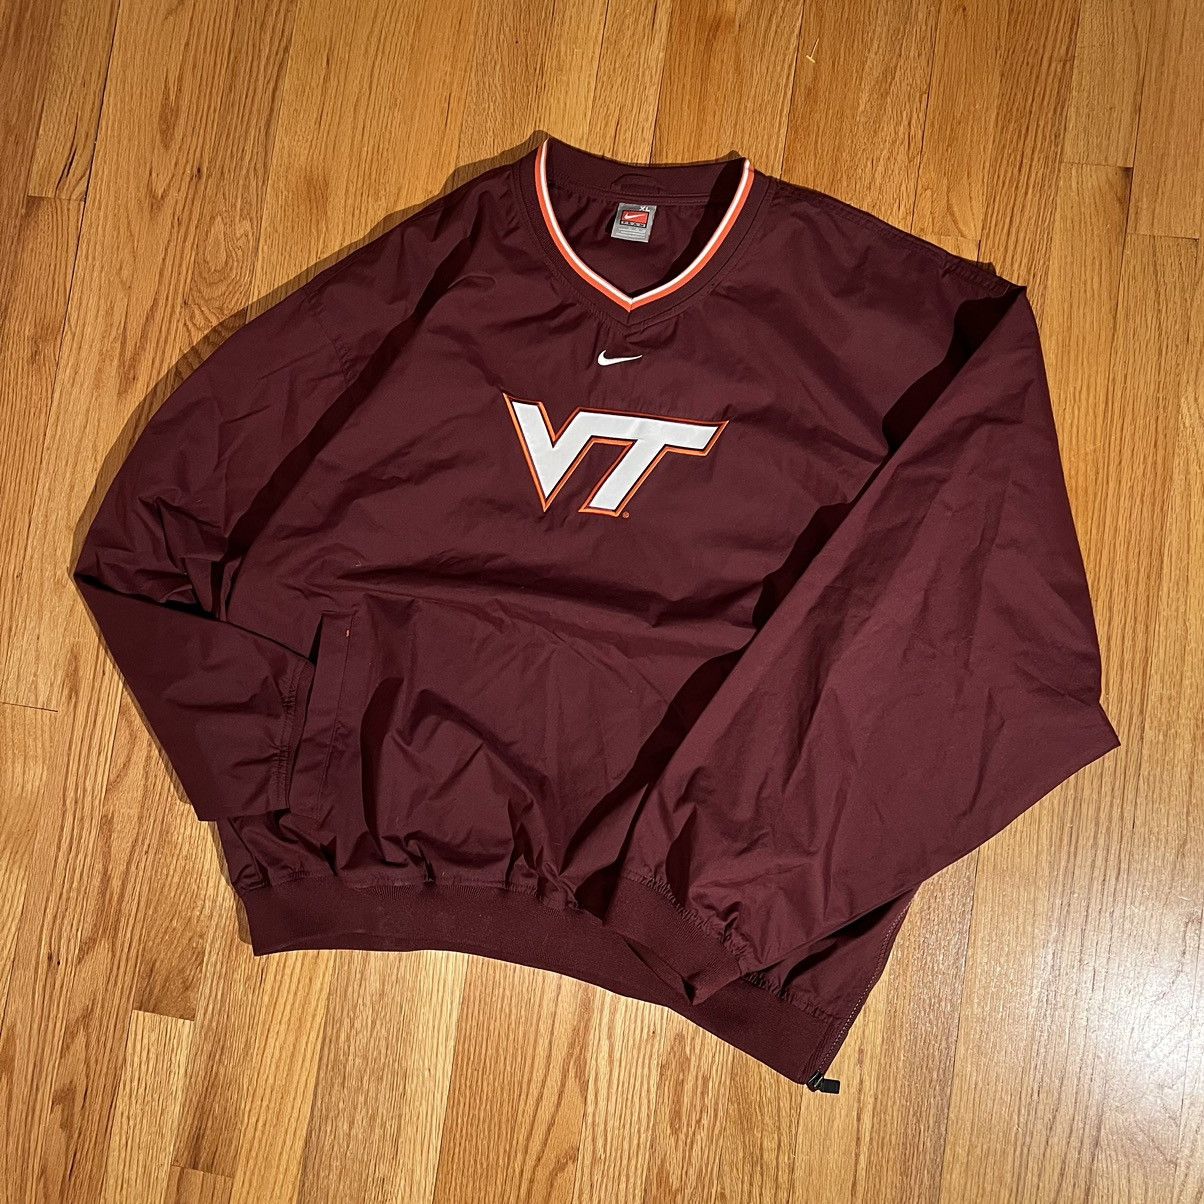 Nike Virginia Tech Sweatshirt Size US XL / EU 56 / 4 - 2 Preview